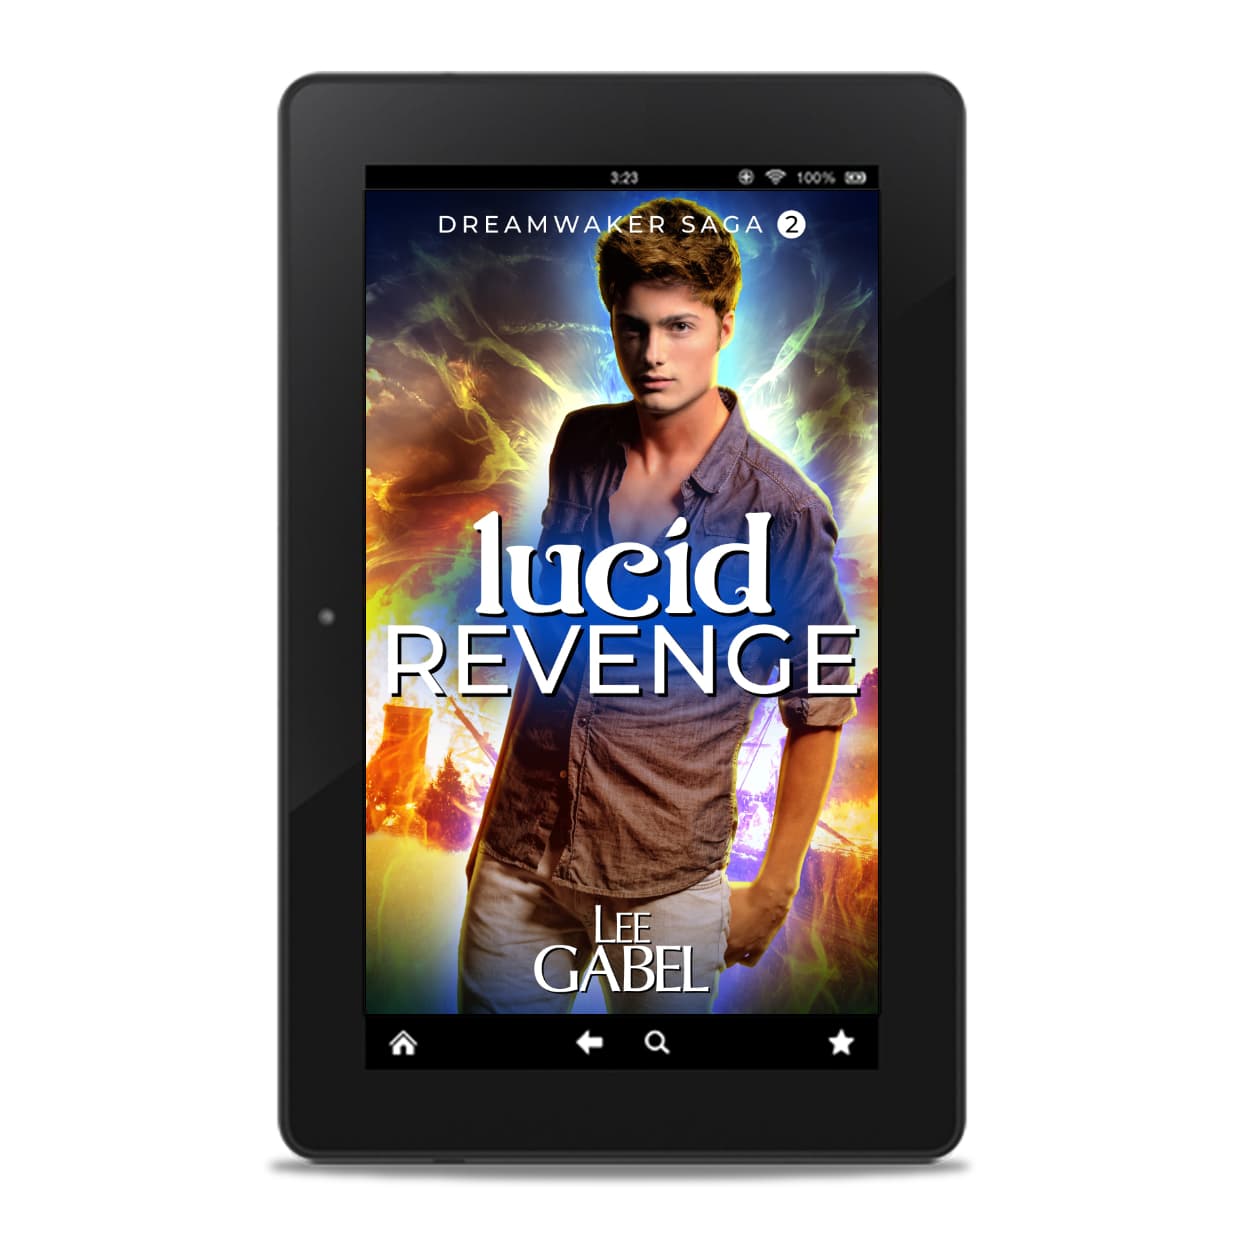 Gabel's　#2　Lucid　Revenge,　Lee　–　Dreamwaker　(E-Book)　Saga　Bookshop